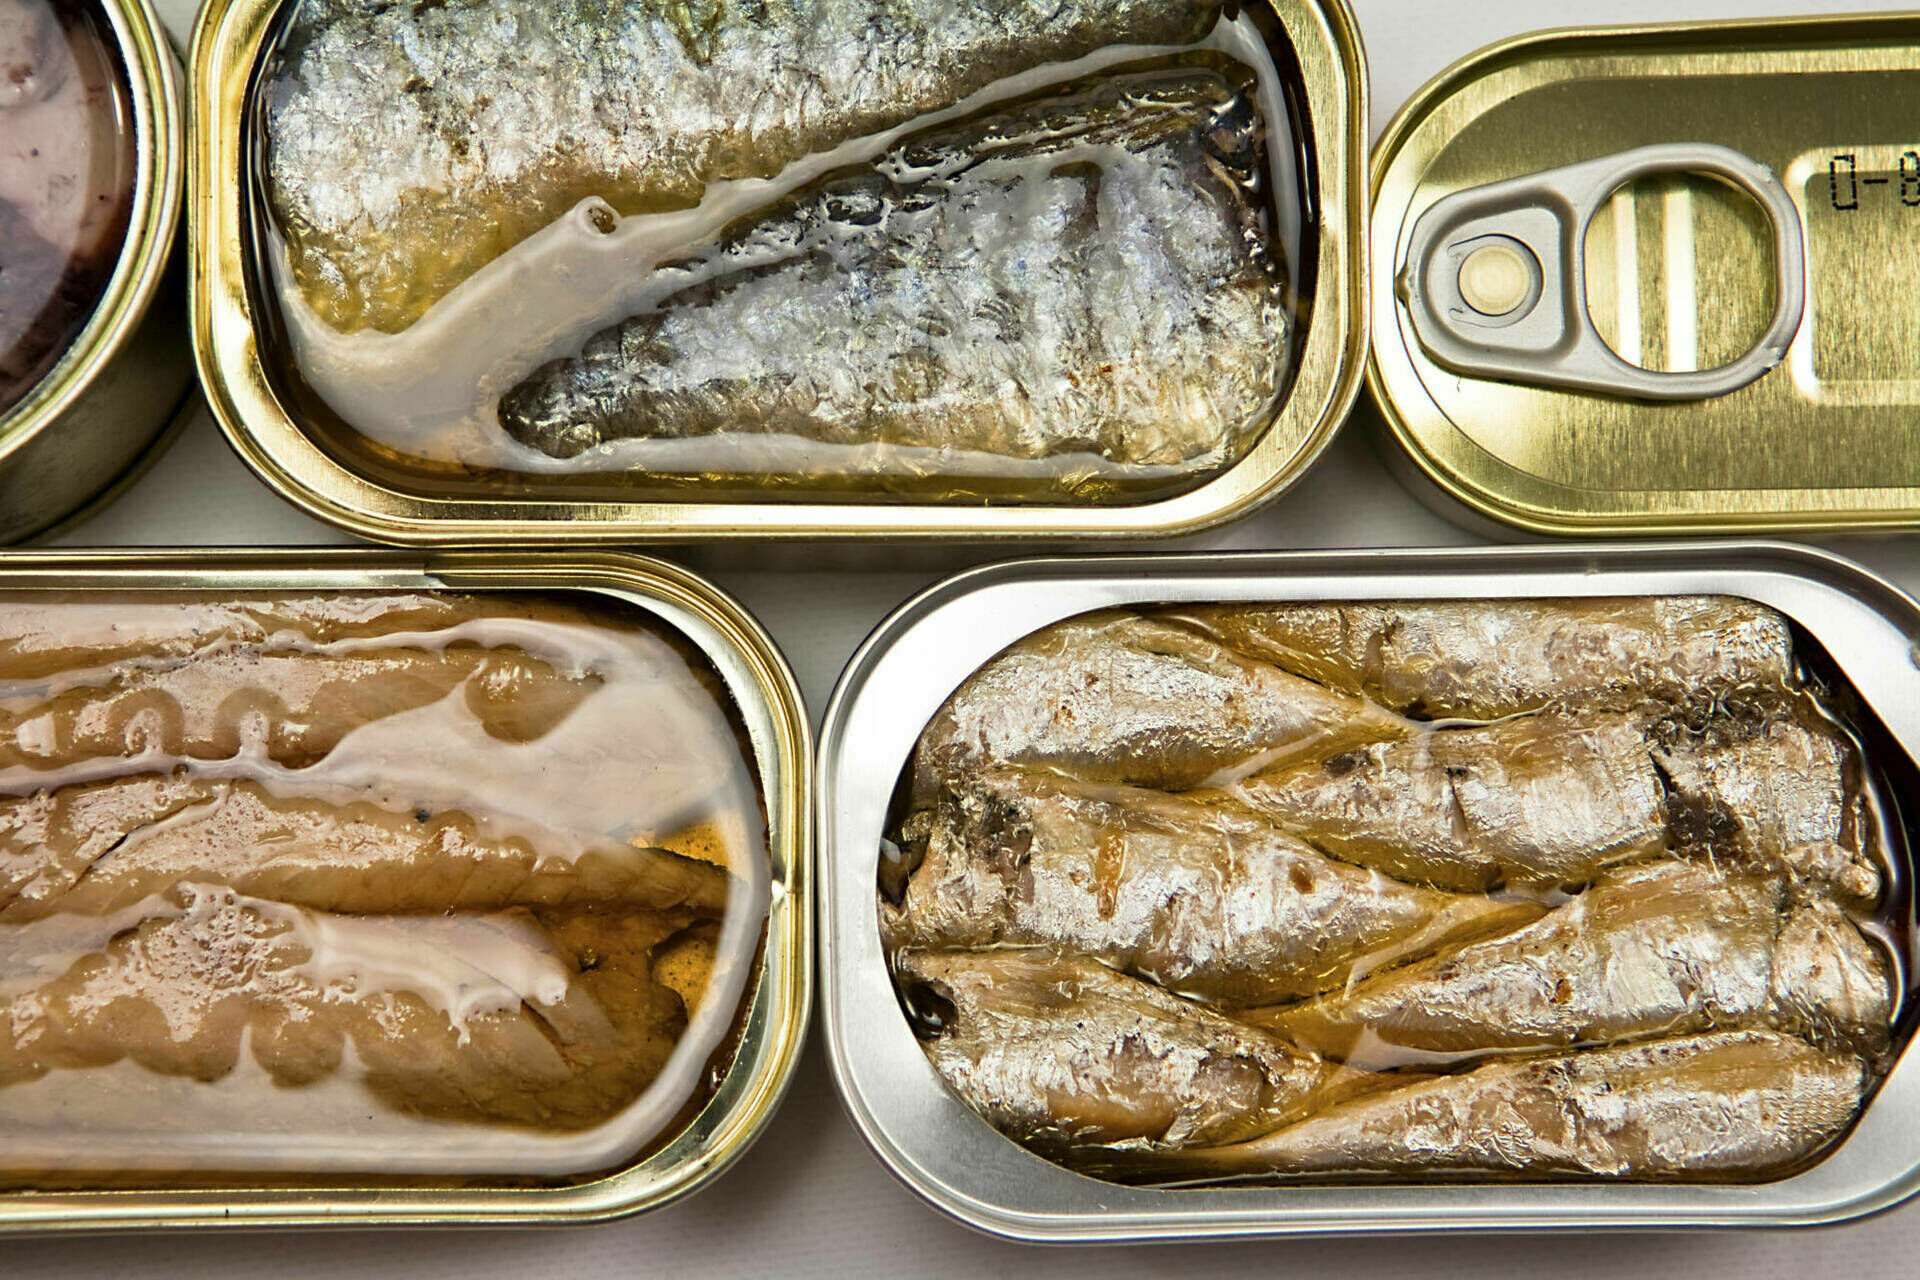 Производители предупредили о подорожании рыбных консервов на 5-15%